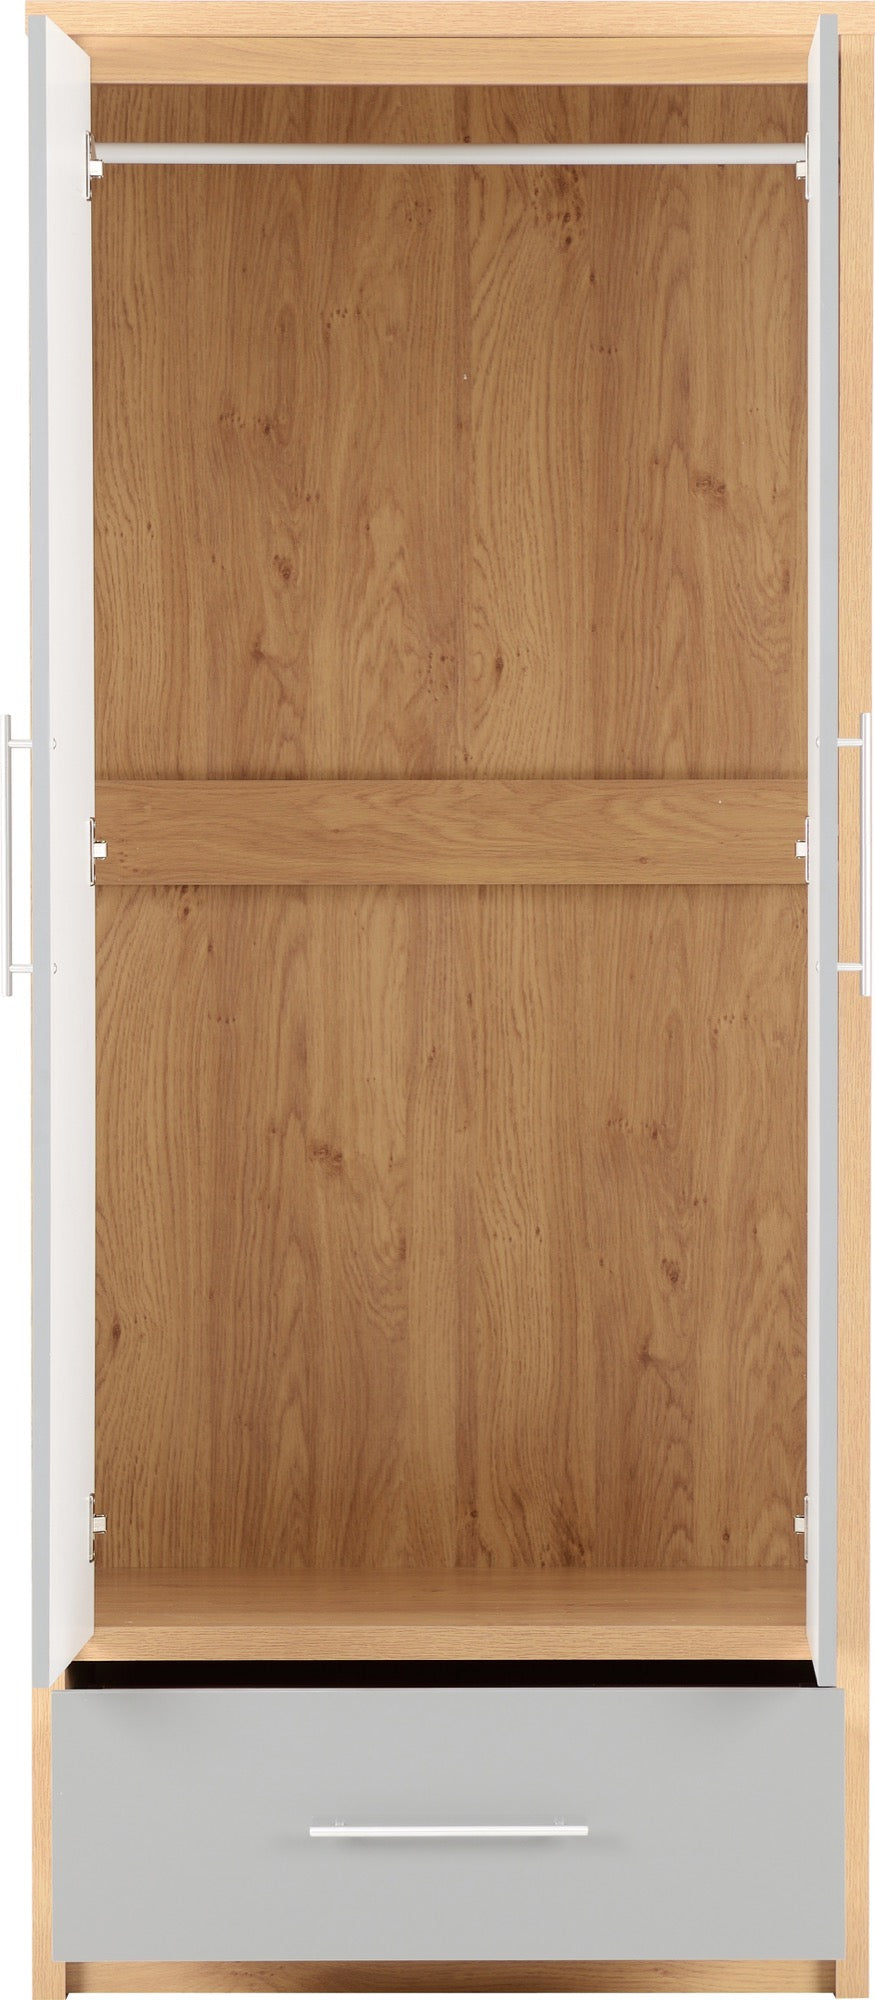 2 door oak wardrobe with drawers